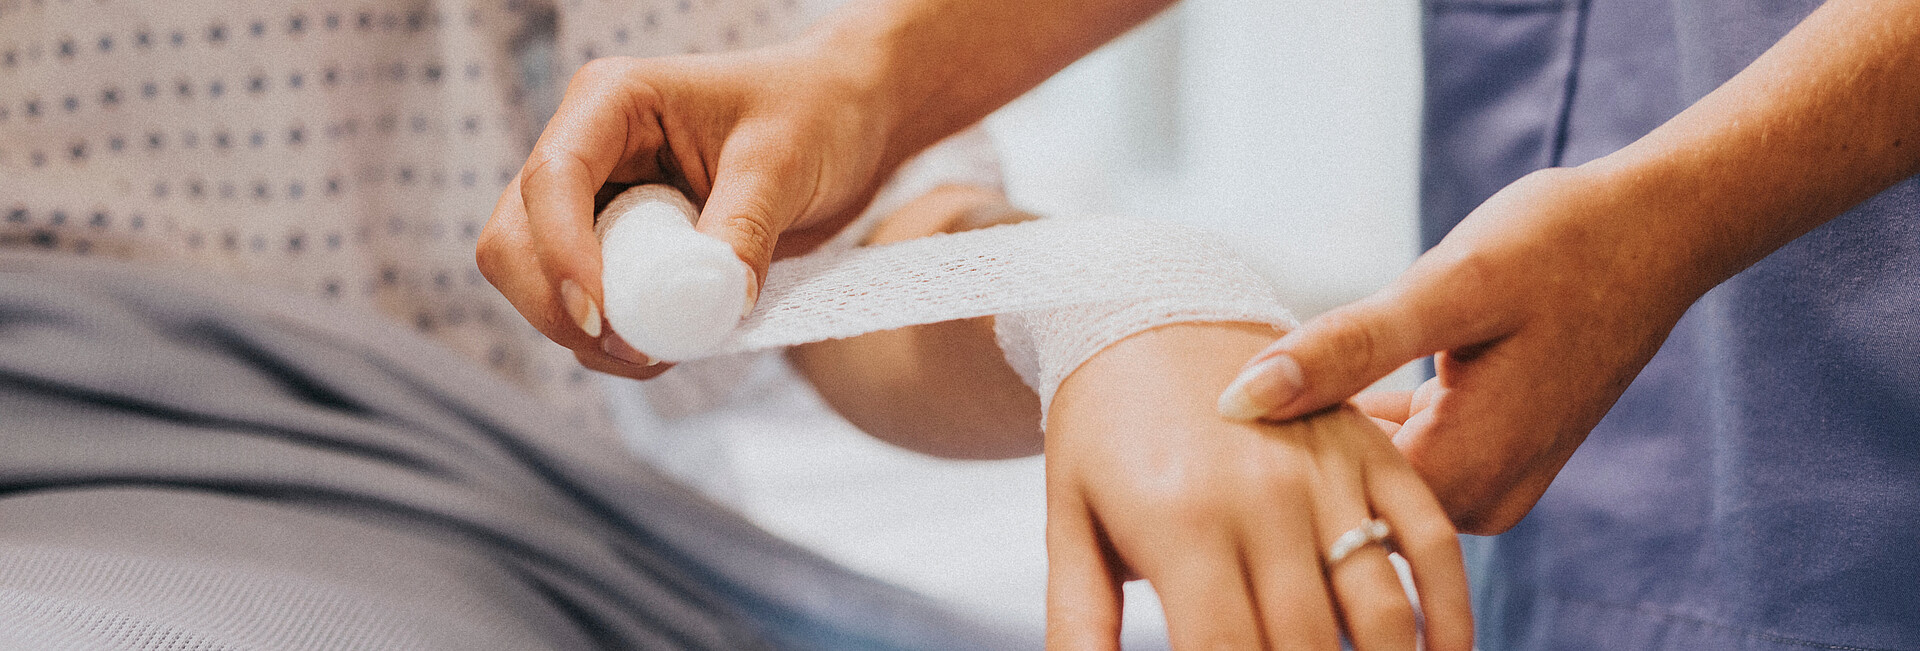 Eine Krankenschwester legt einer Frau einen Verband am Arm an